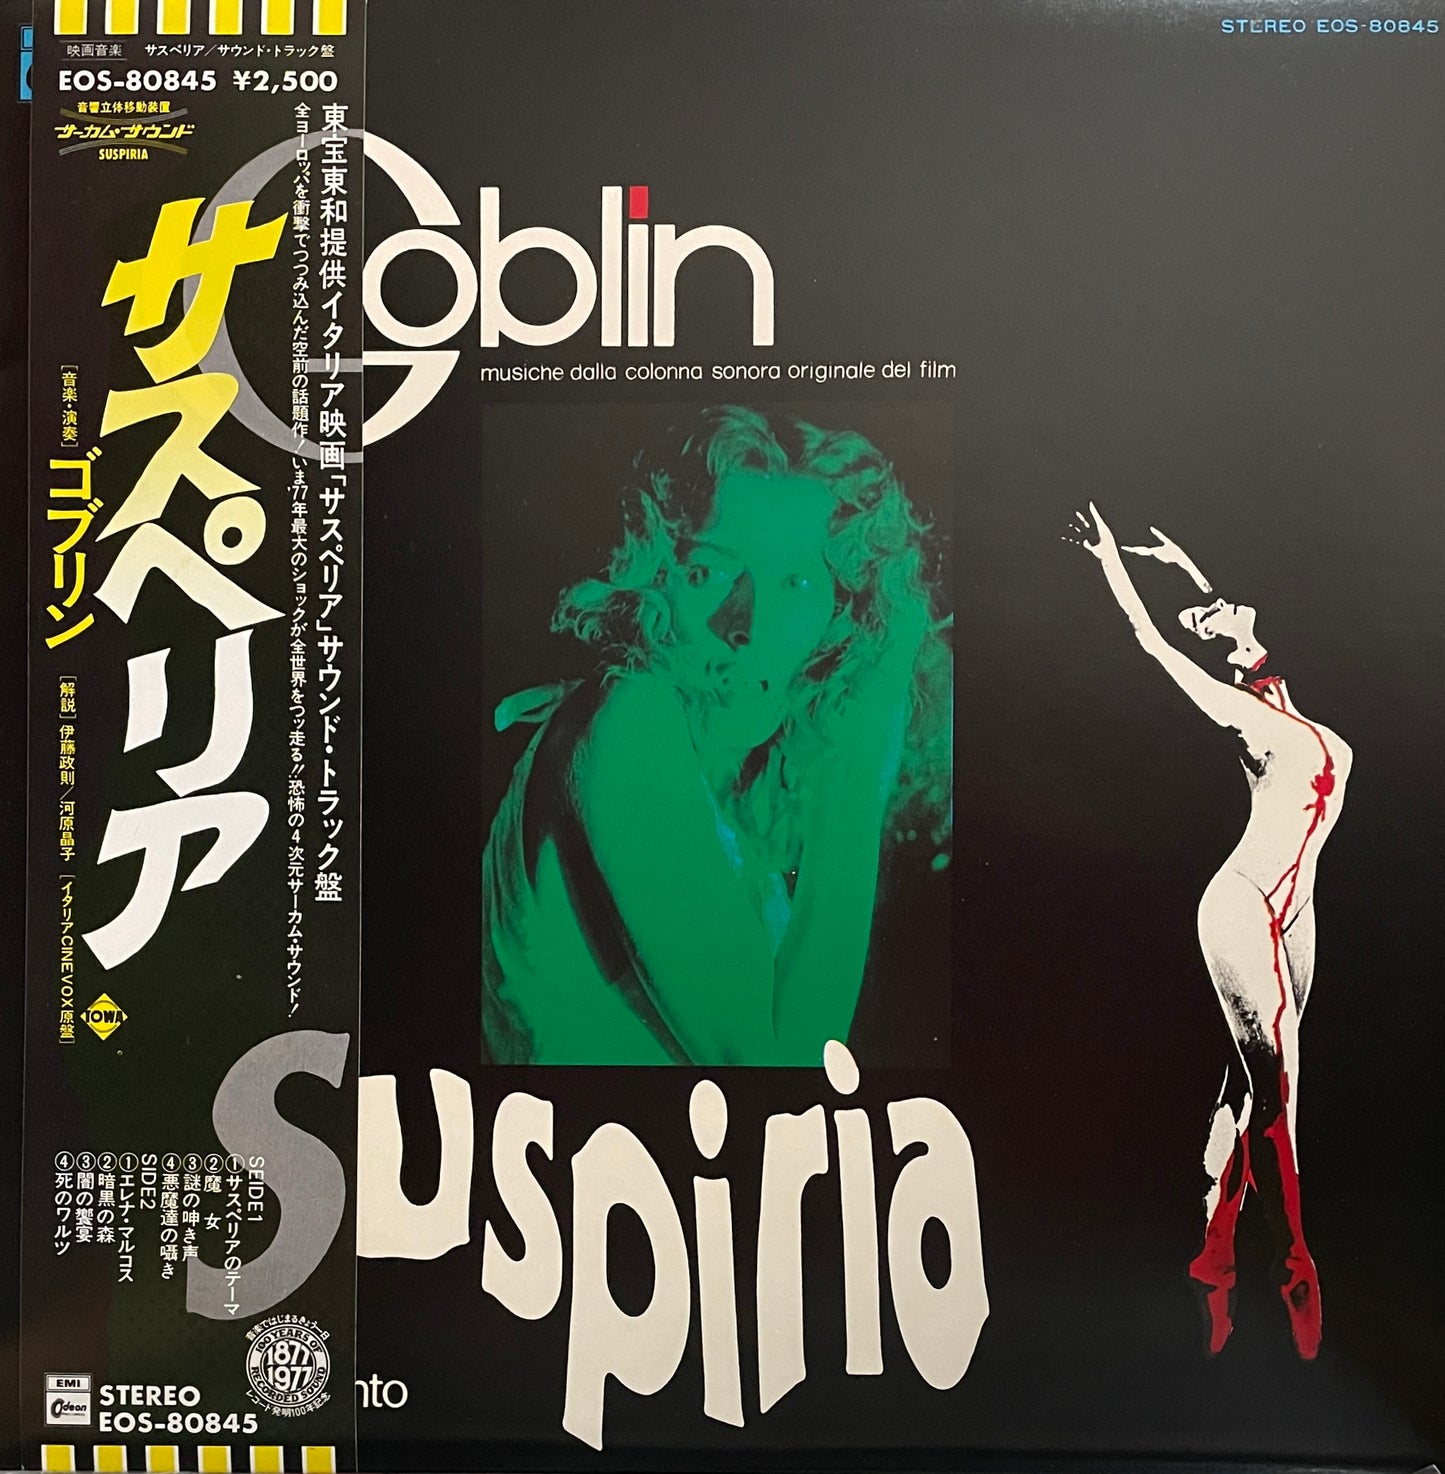 Goblin "Suspiria" (1977)